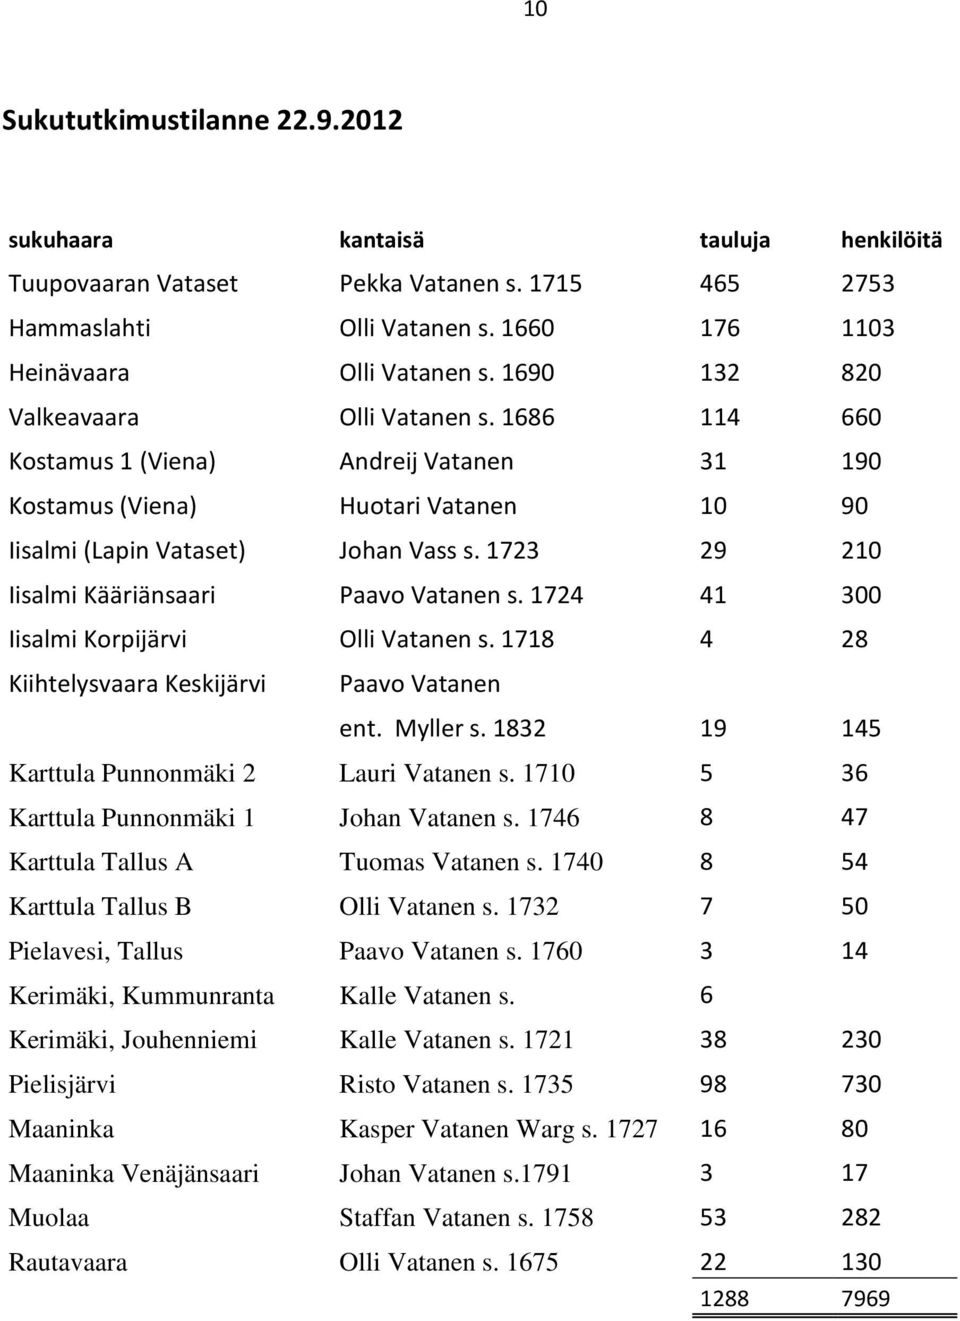 1723 29 210 Iisalmi Kääriänsaari Paavo Vatanen s. 1724 41 300 Iisalmi Korpijärvi Olli Vatanen s. 1718 4 28 Kiihtelysvaara Keskijärvi Paavo Vatanen ent. Myller s.